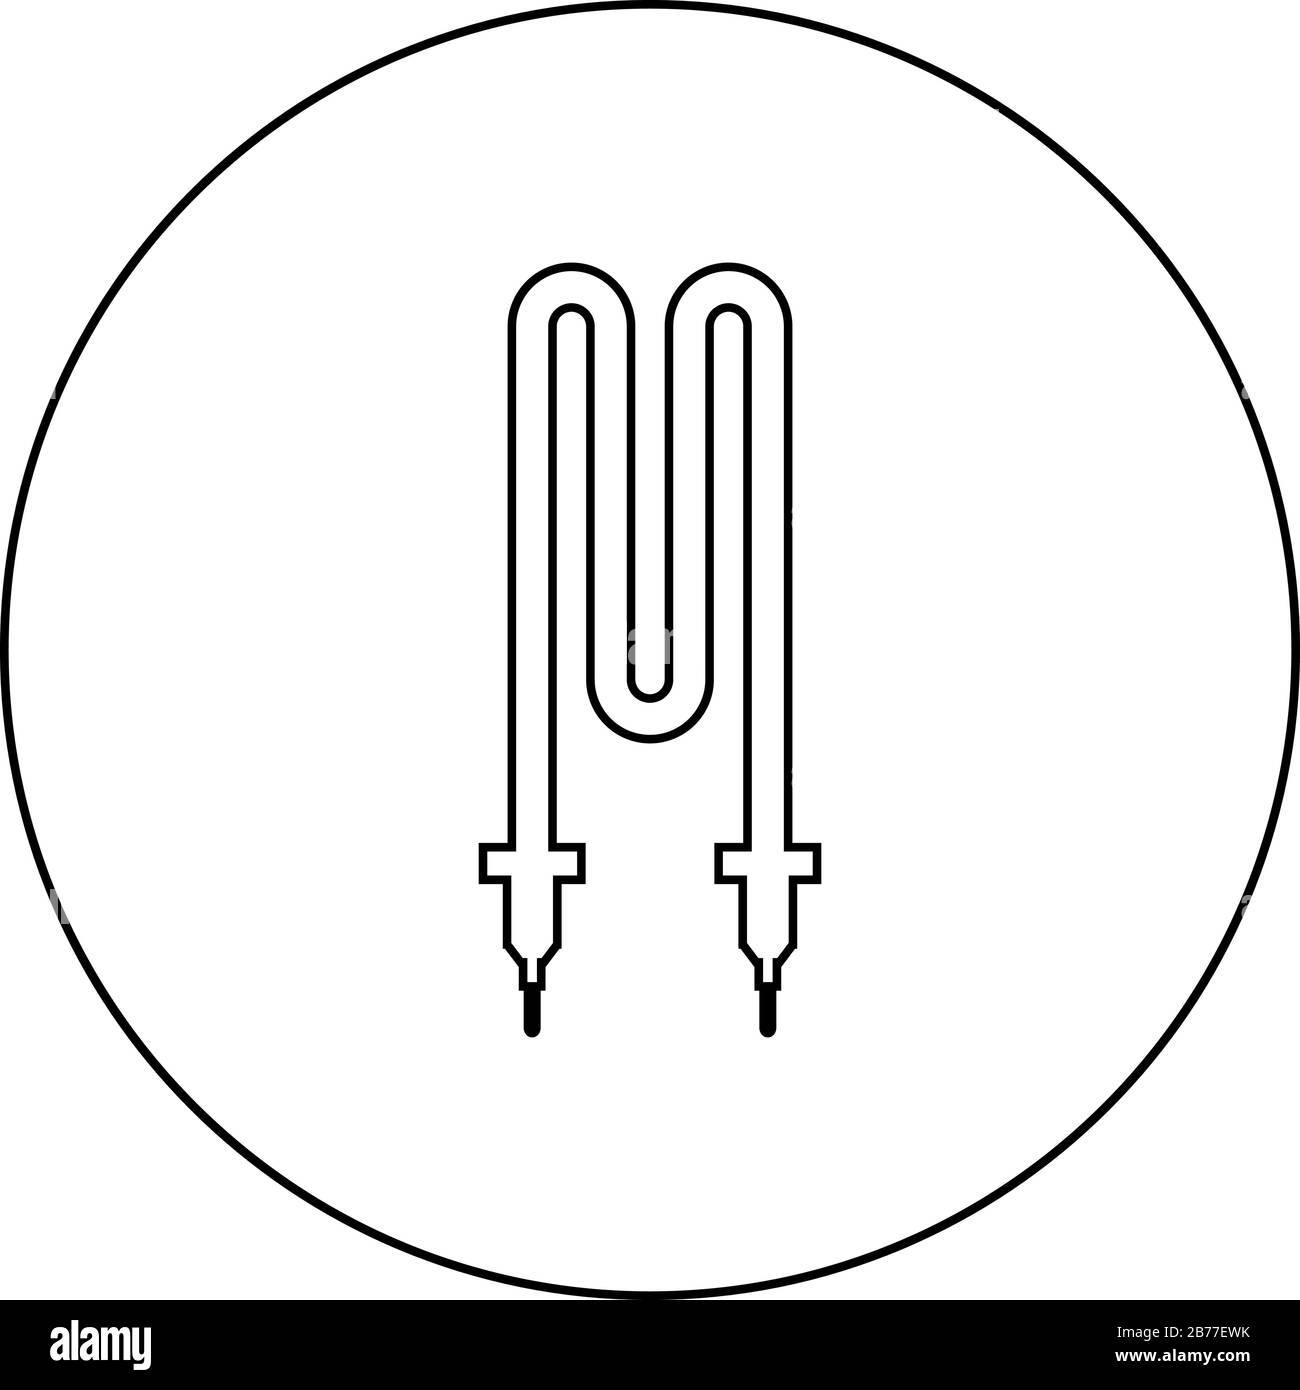 Symbol für thermisches elektrisches Heizelement im Kreis runder Umriss schwarze Farbvektor-Abbildung flaches, einfaches Bild Stock Vektor